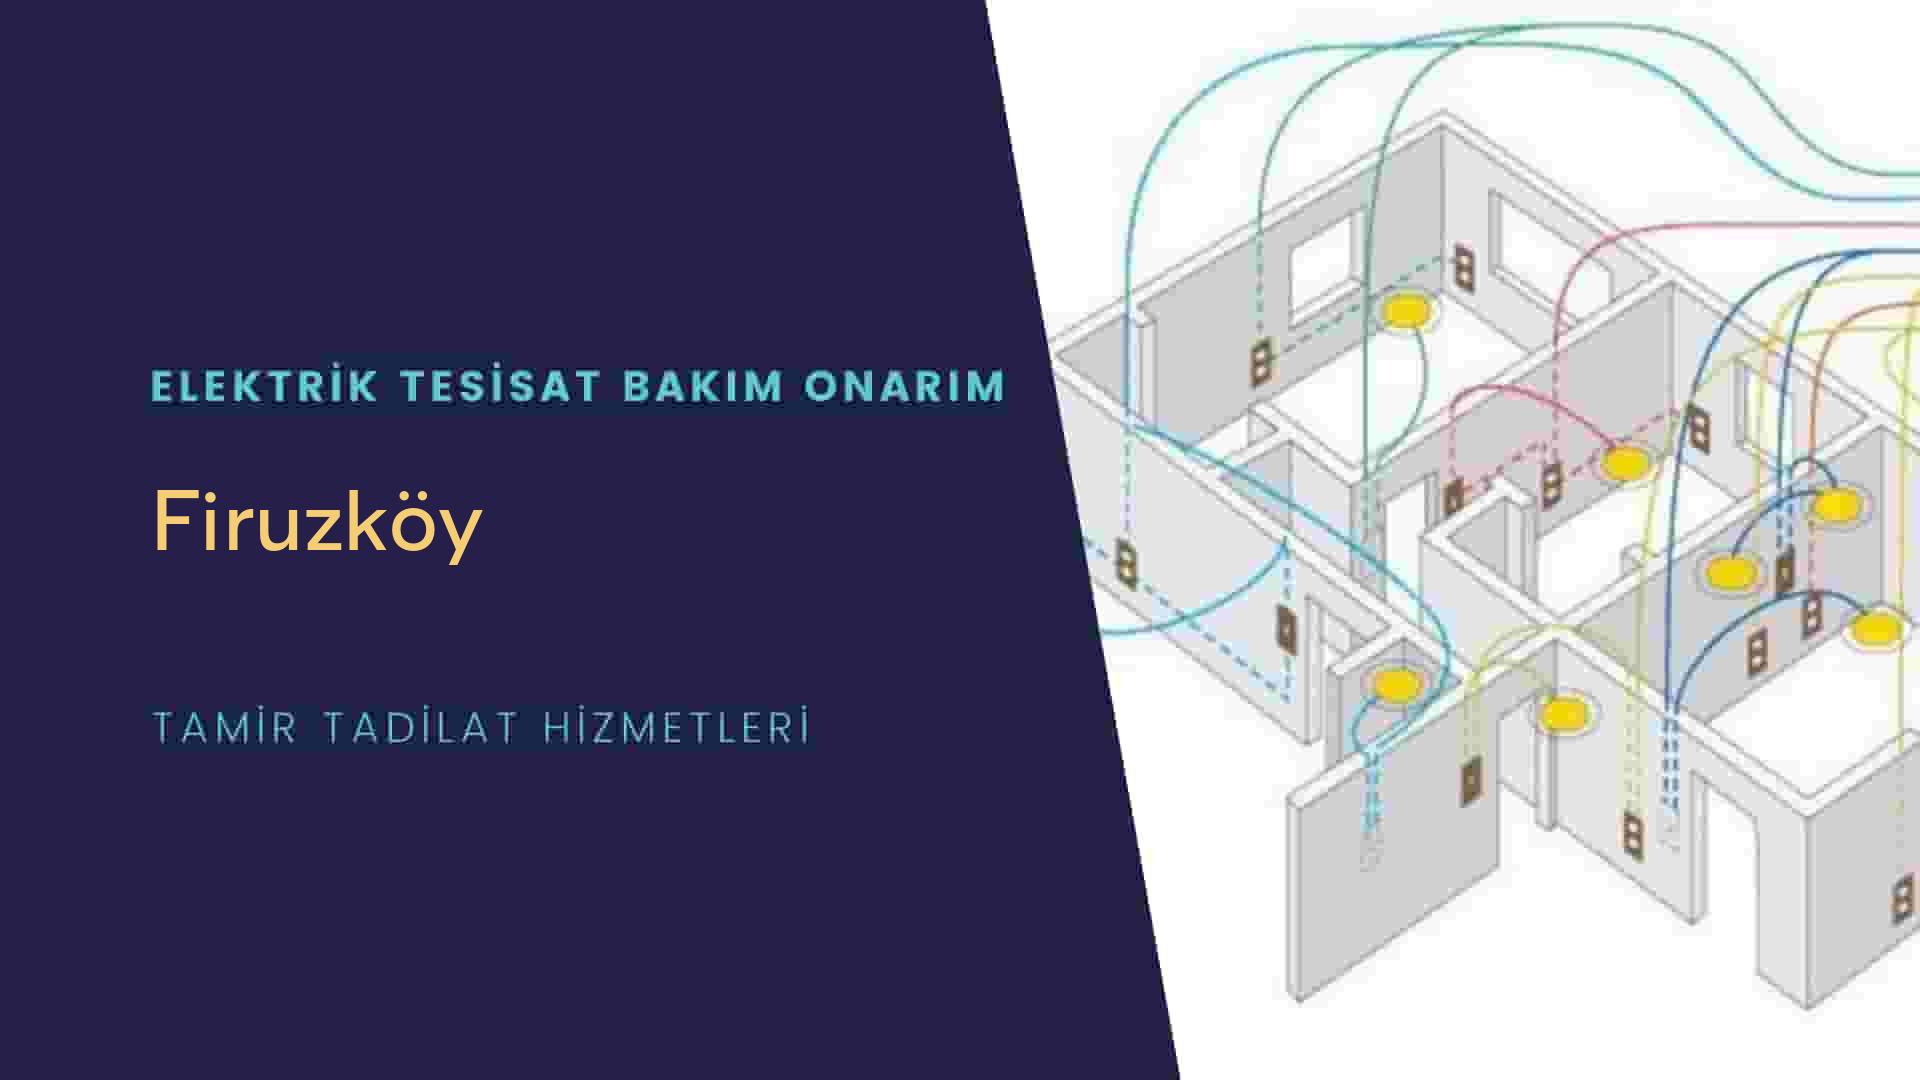 Firuzköy'de elektrik tesisatı ustalarımı arıyorsunuz doğru adrestenizi Firuzköy elektrik tesisatı ustalarımız 7/24 sizlere hizmet vermekten mutluluk duyar.